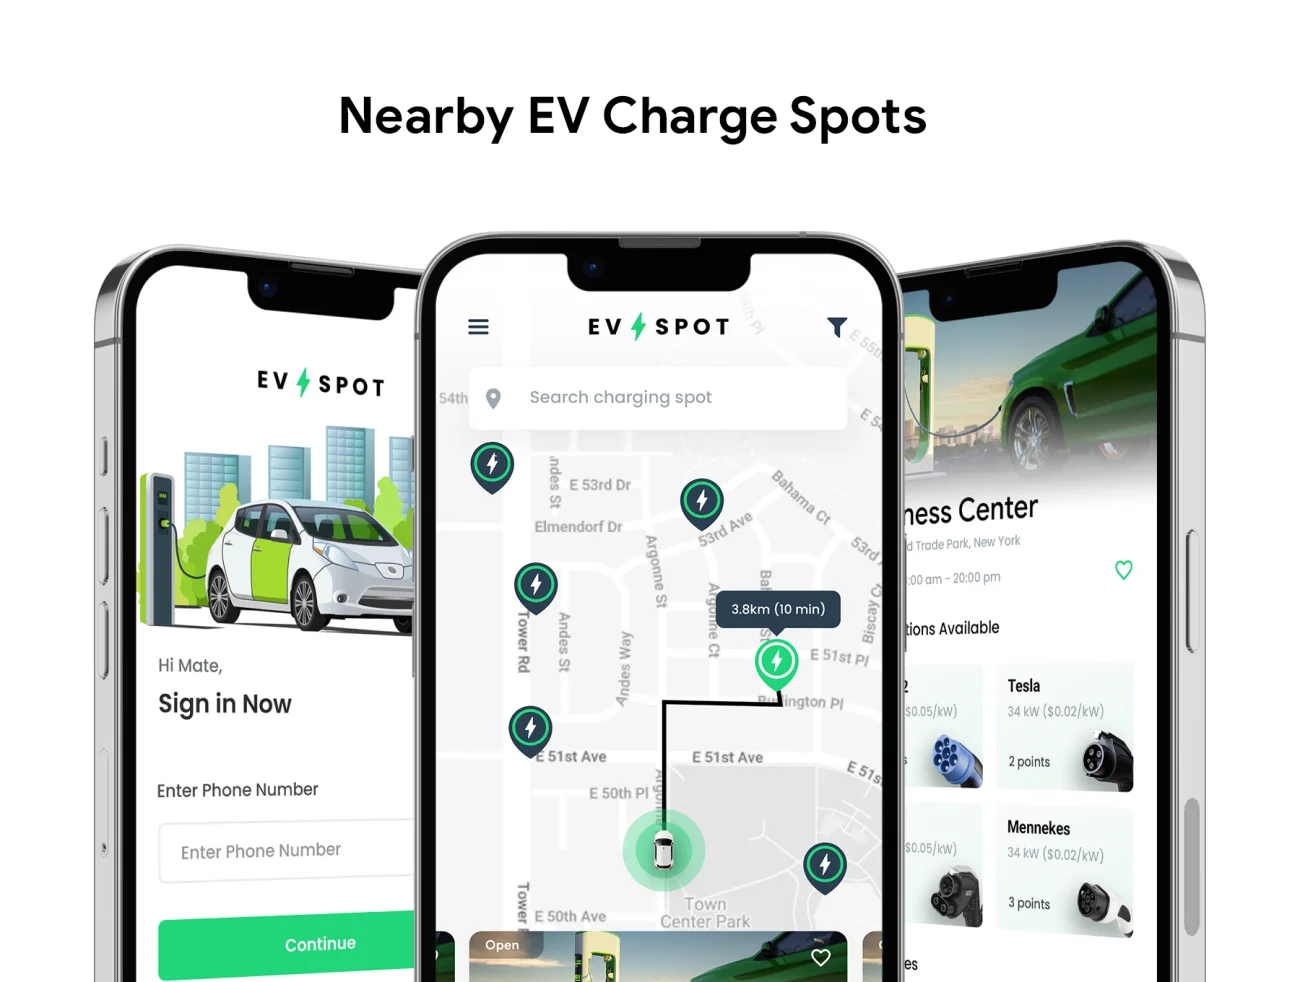 查找附近电动车充电站手机应用UI设计套件源码 EV Charging Station Finder App - EV Spot .html .json-UI/UX、ui套件、列表、源码、表单-到位啦UI